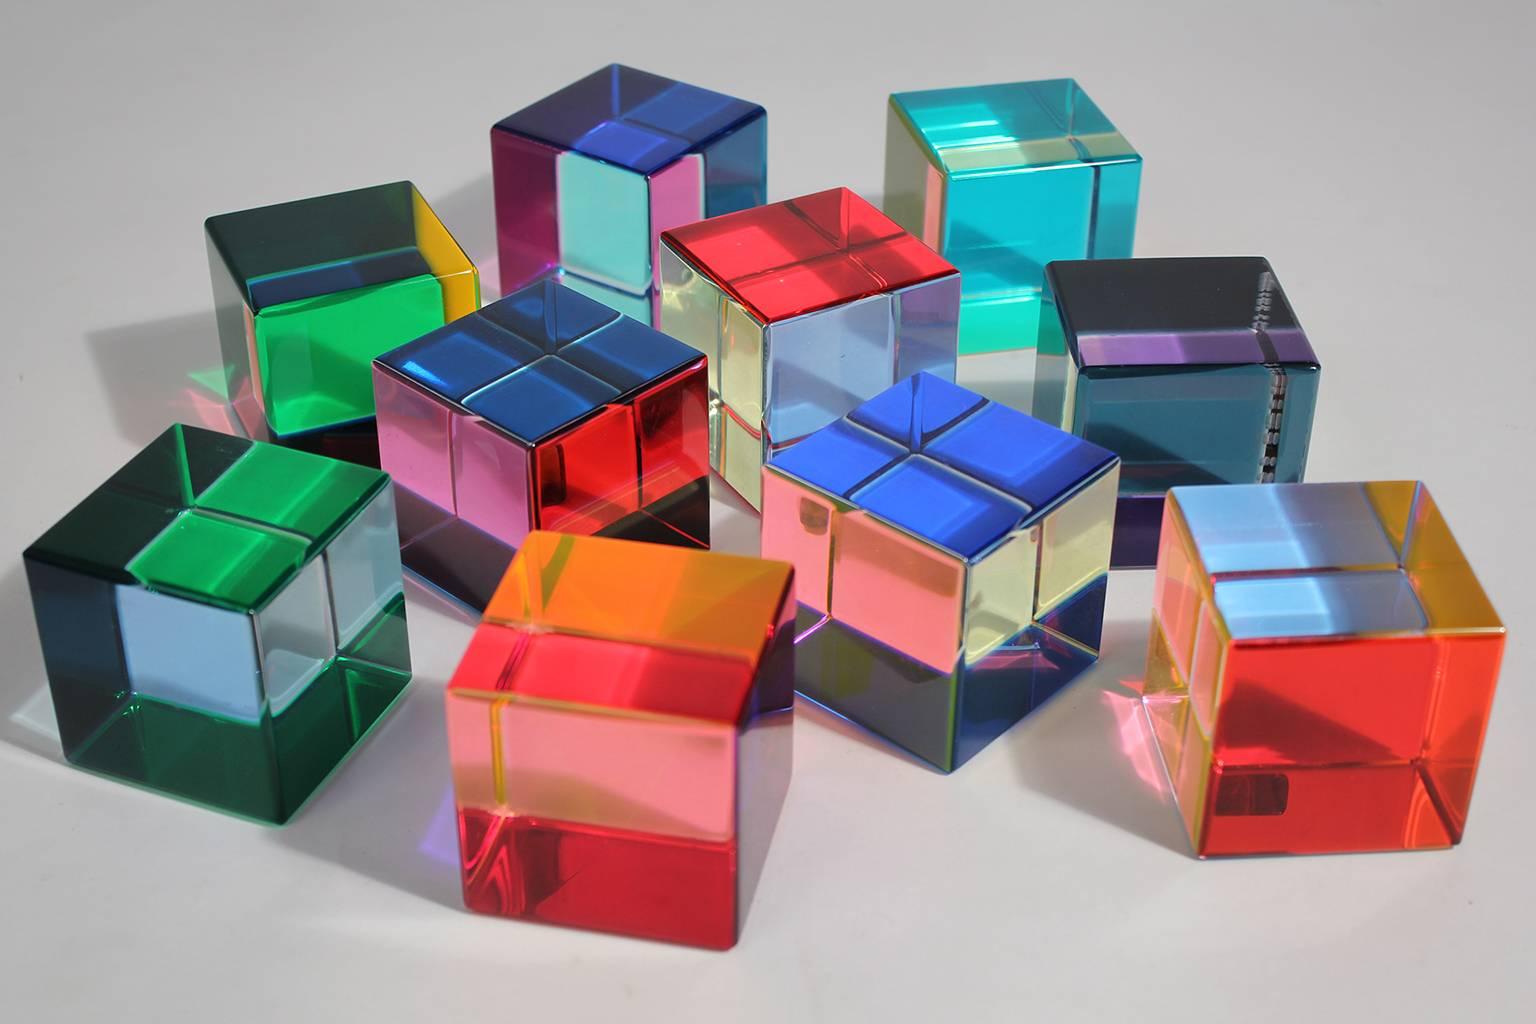 vasa mihich cubes